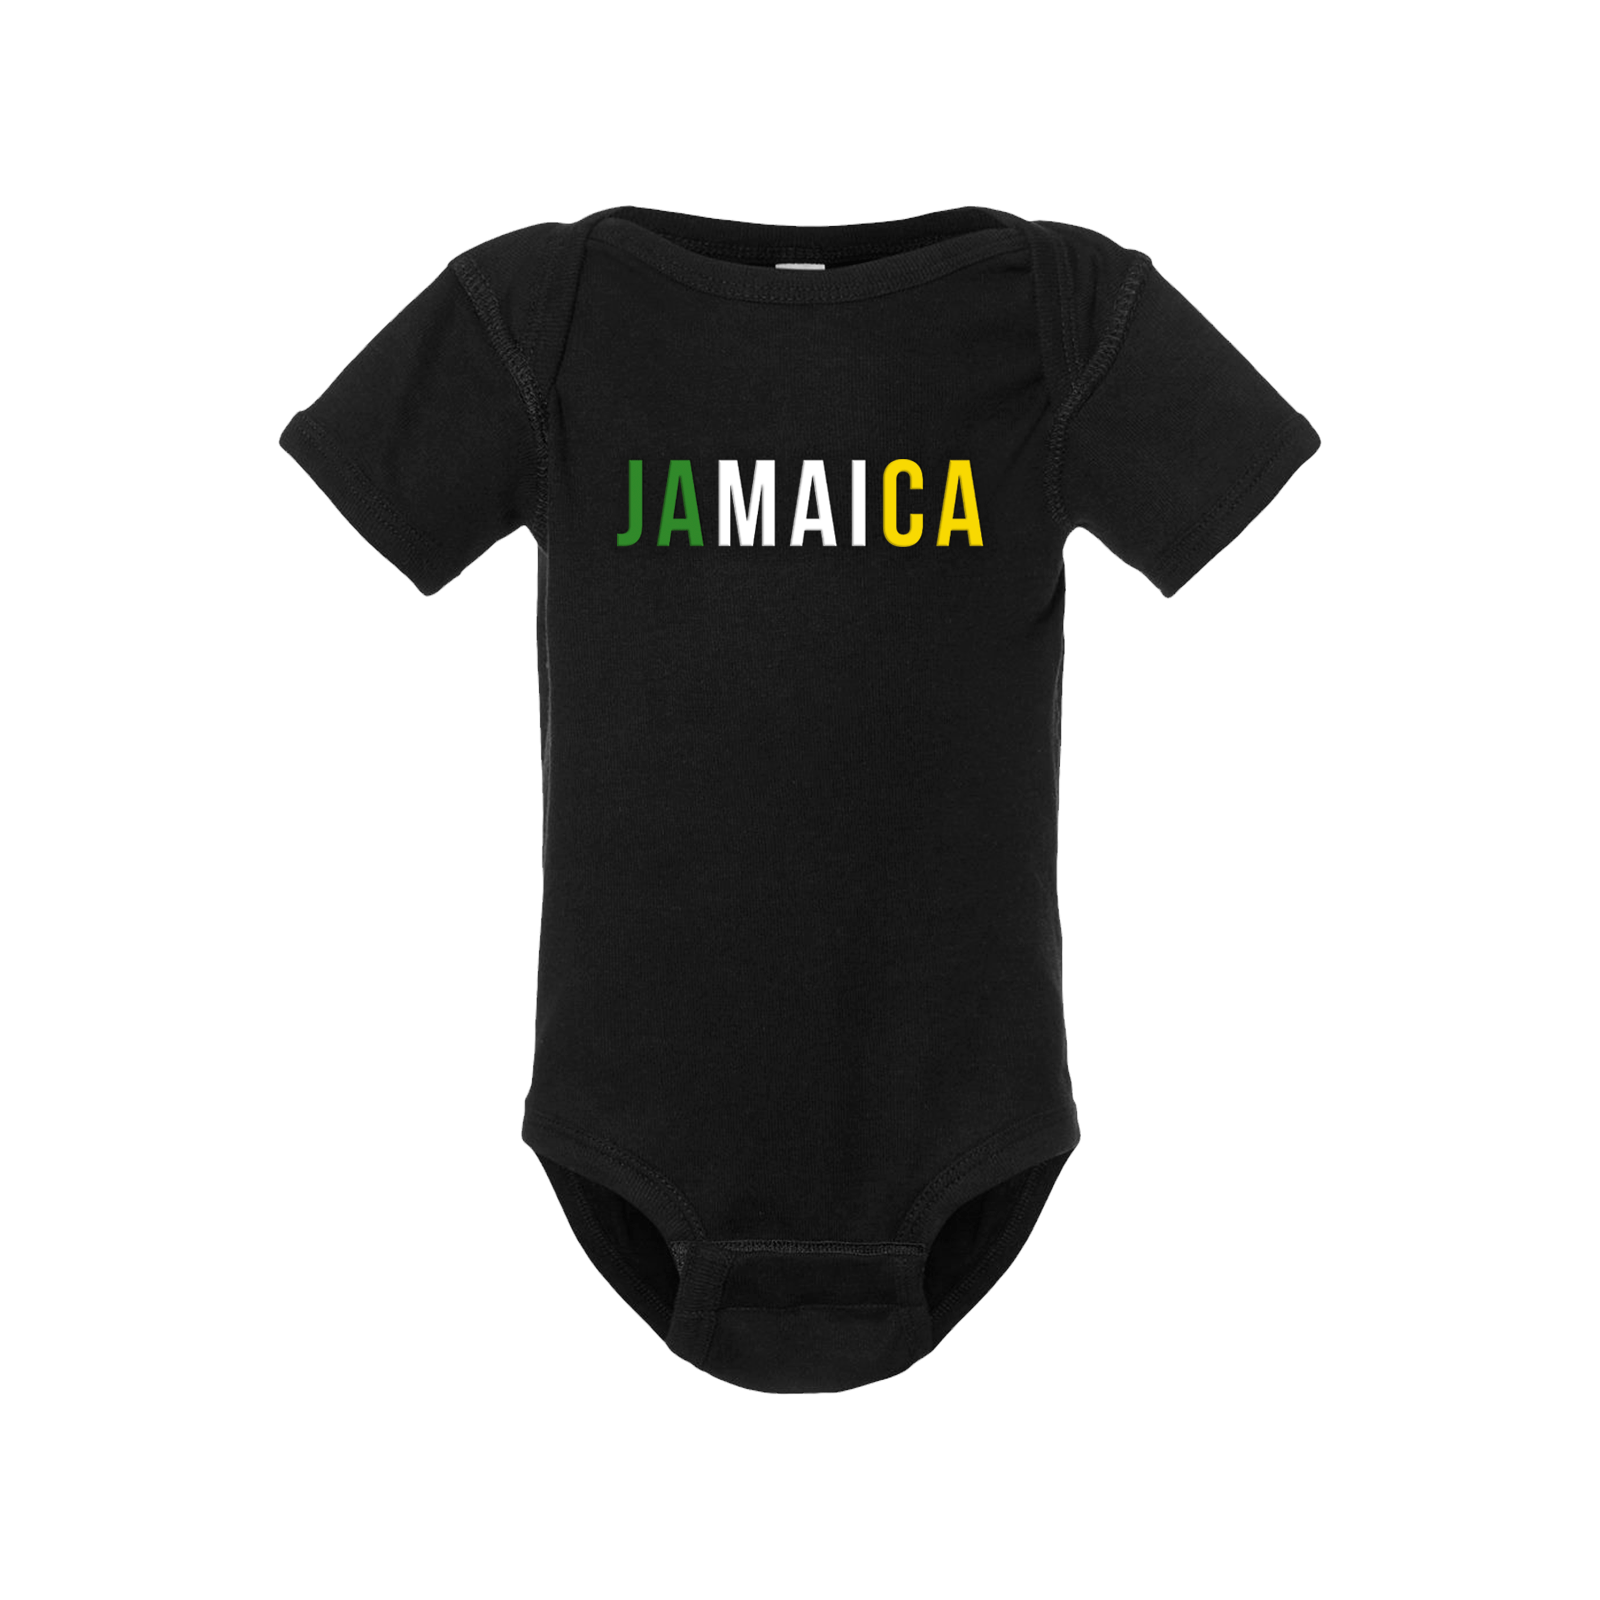 Jamaica Short Sleeve Onesie - Babies & Toddlers